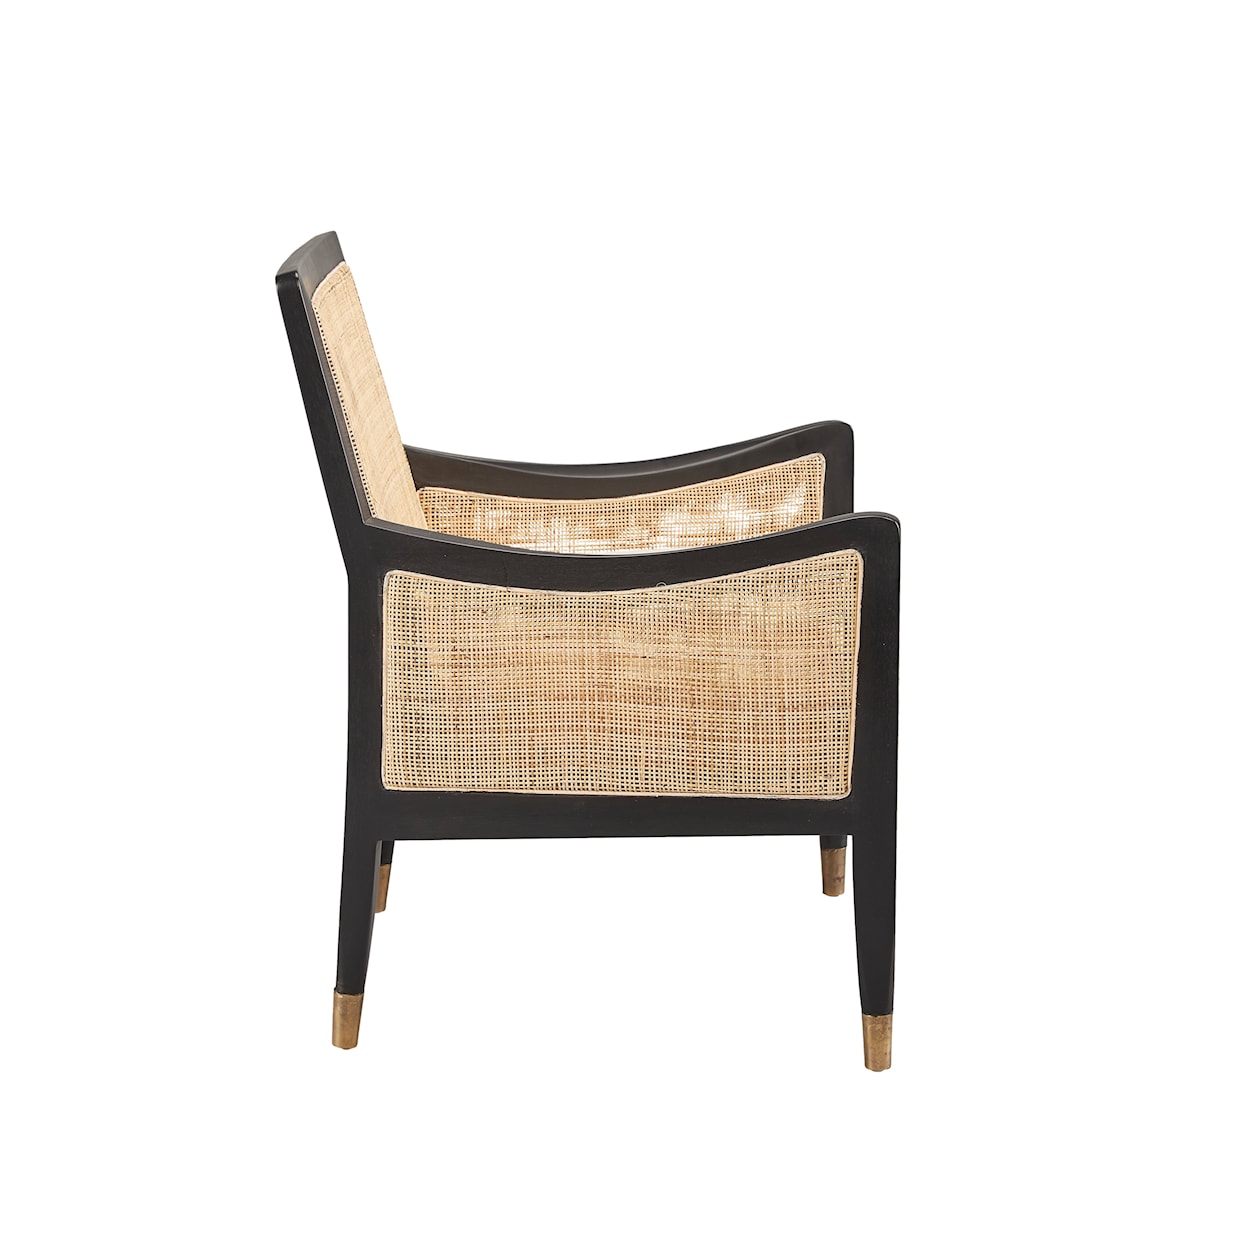 Furniture Classics Furniture Classics Voss Cane Chair